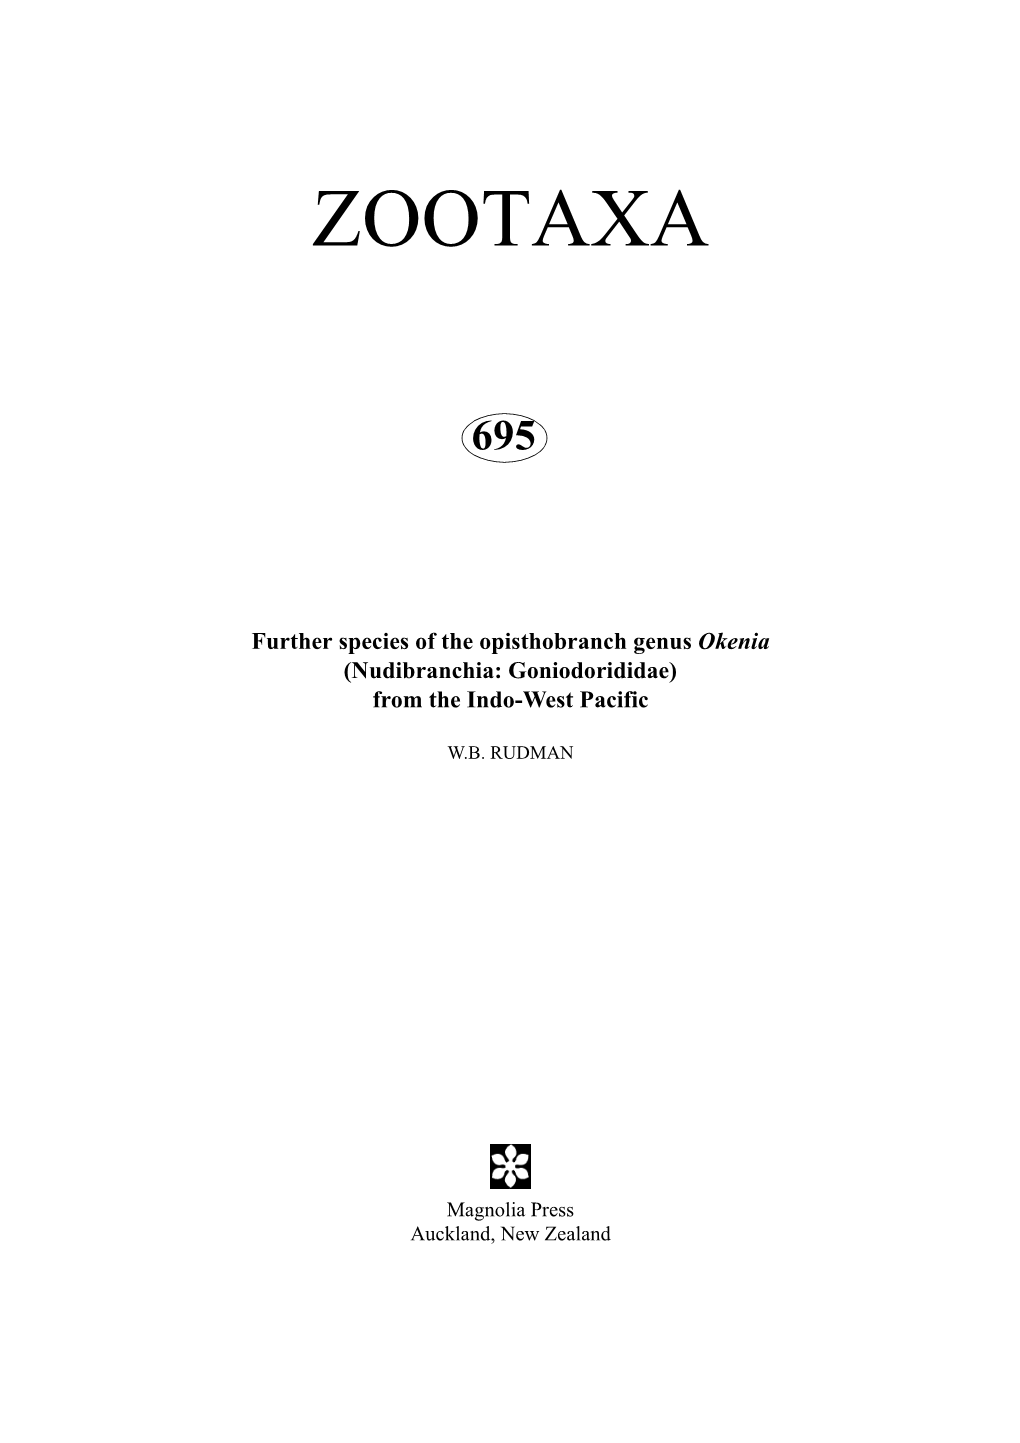 Zootaxa, Mollusca, Goniodorididae, Okenia